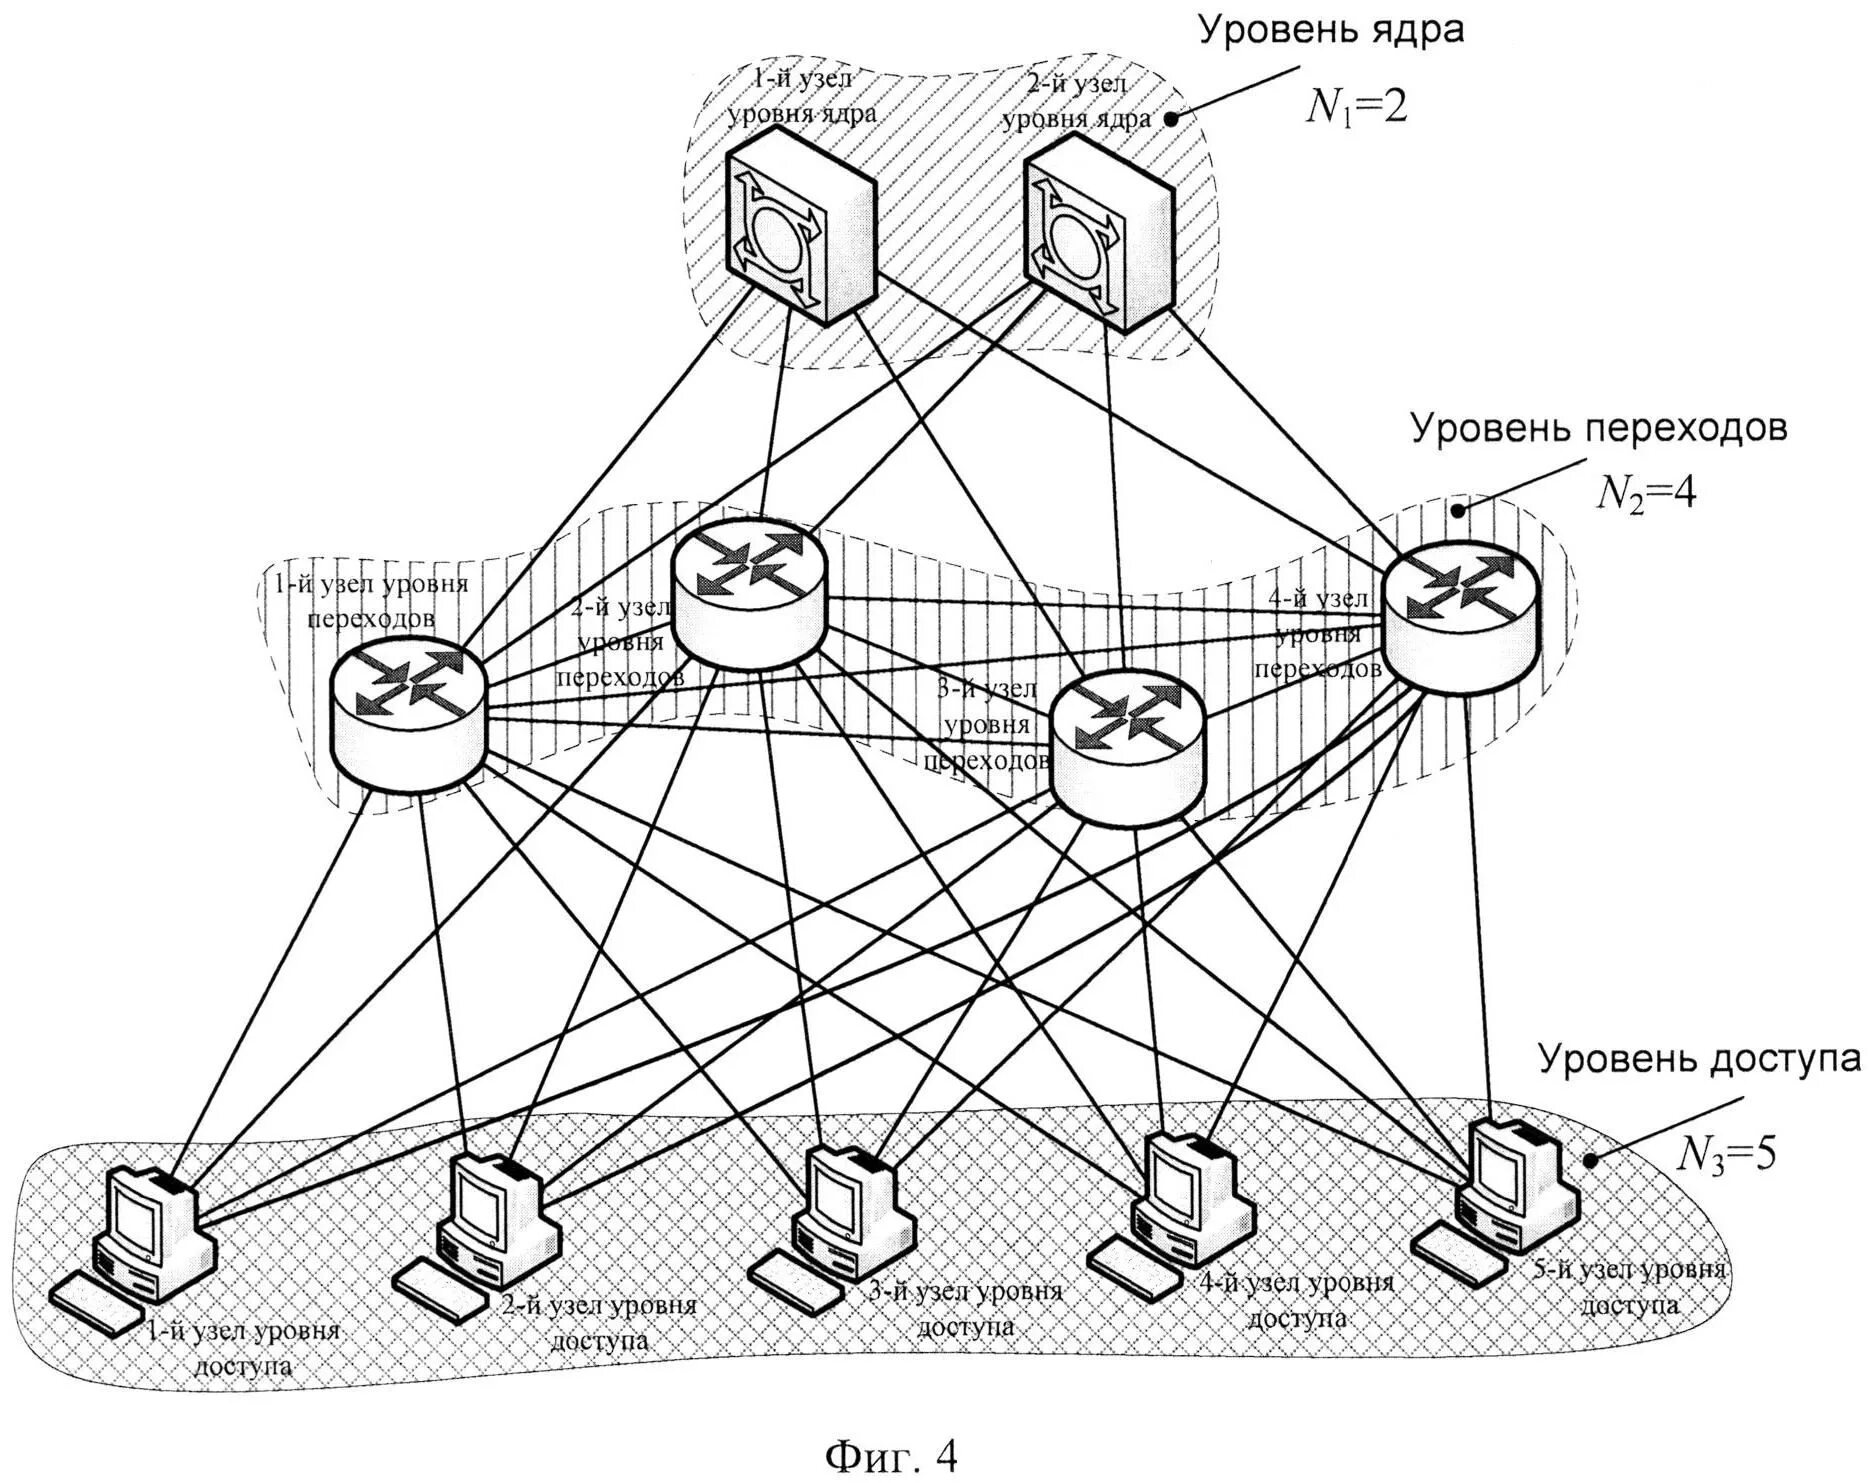 Трехуровневая иерархическая модель сети. Иерархическая модель сети Cisco. Трехуровневая иерархическая модель Cisco схема. Топология иерархическая звезда. Модели вычислительных сетей